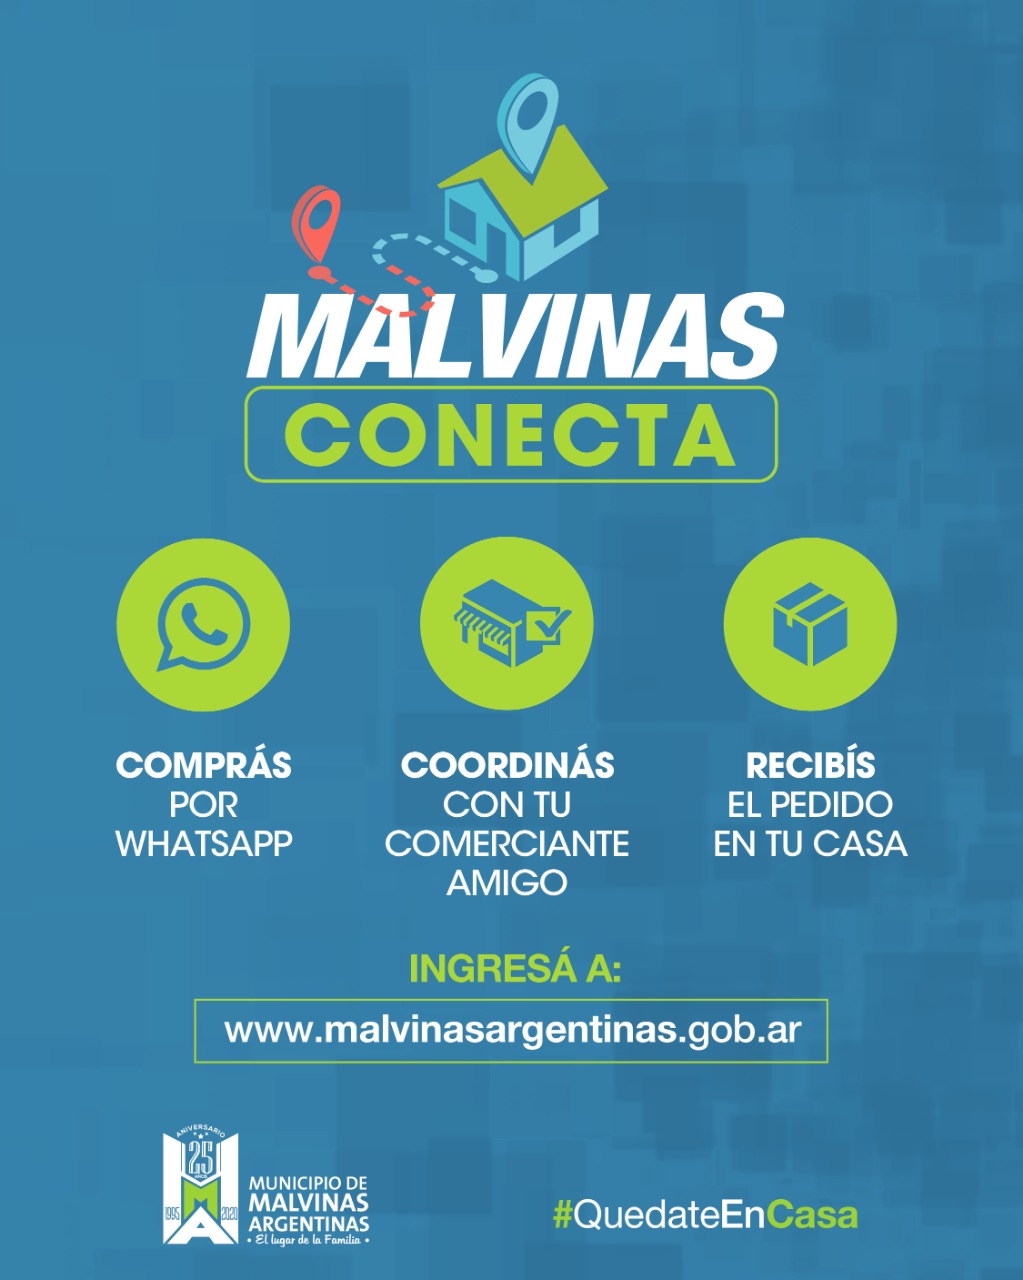 Llega Malvinas Conecta. Whatsa30